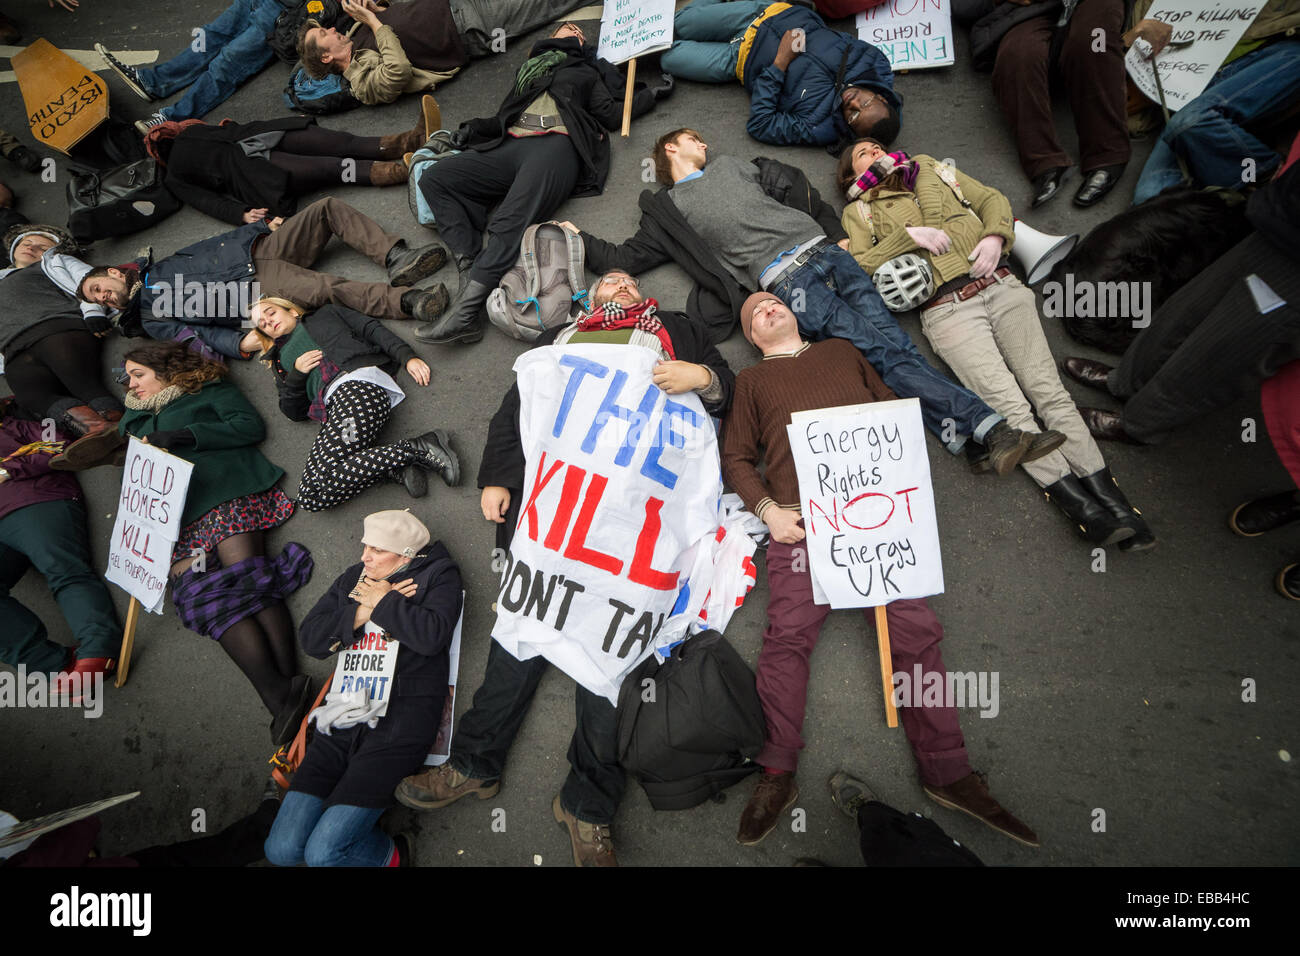 Londres, Reino Unido. 28 Nov, 2014. Combustible protesta de acción contra la pobreza: Guy Corbishley de crédito/Alamy Live News Foto de stock